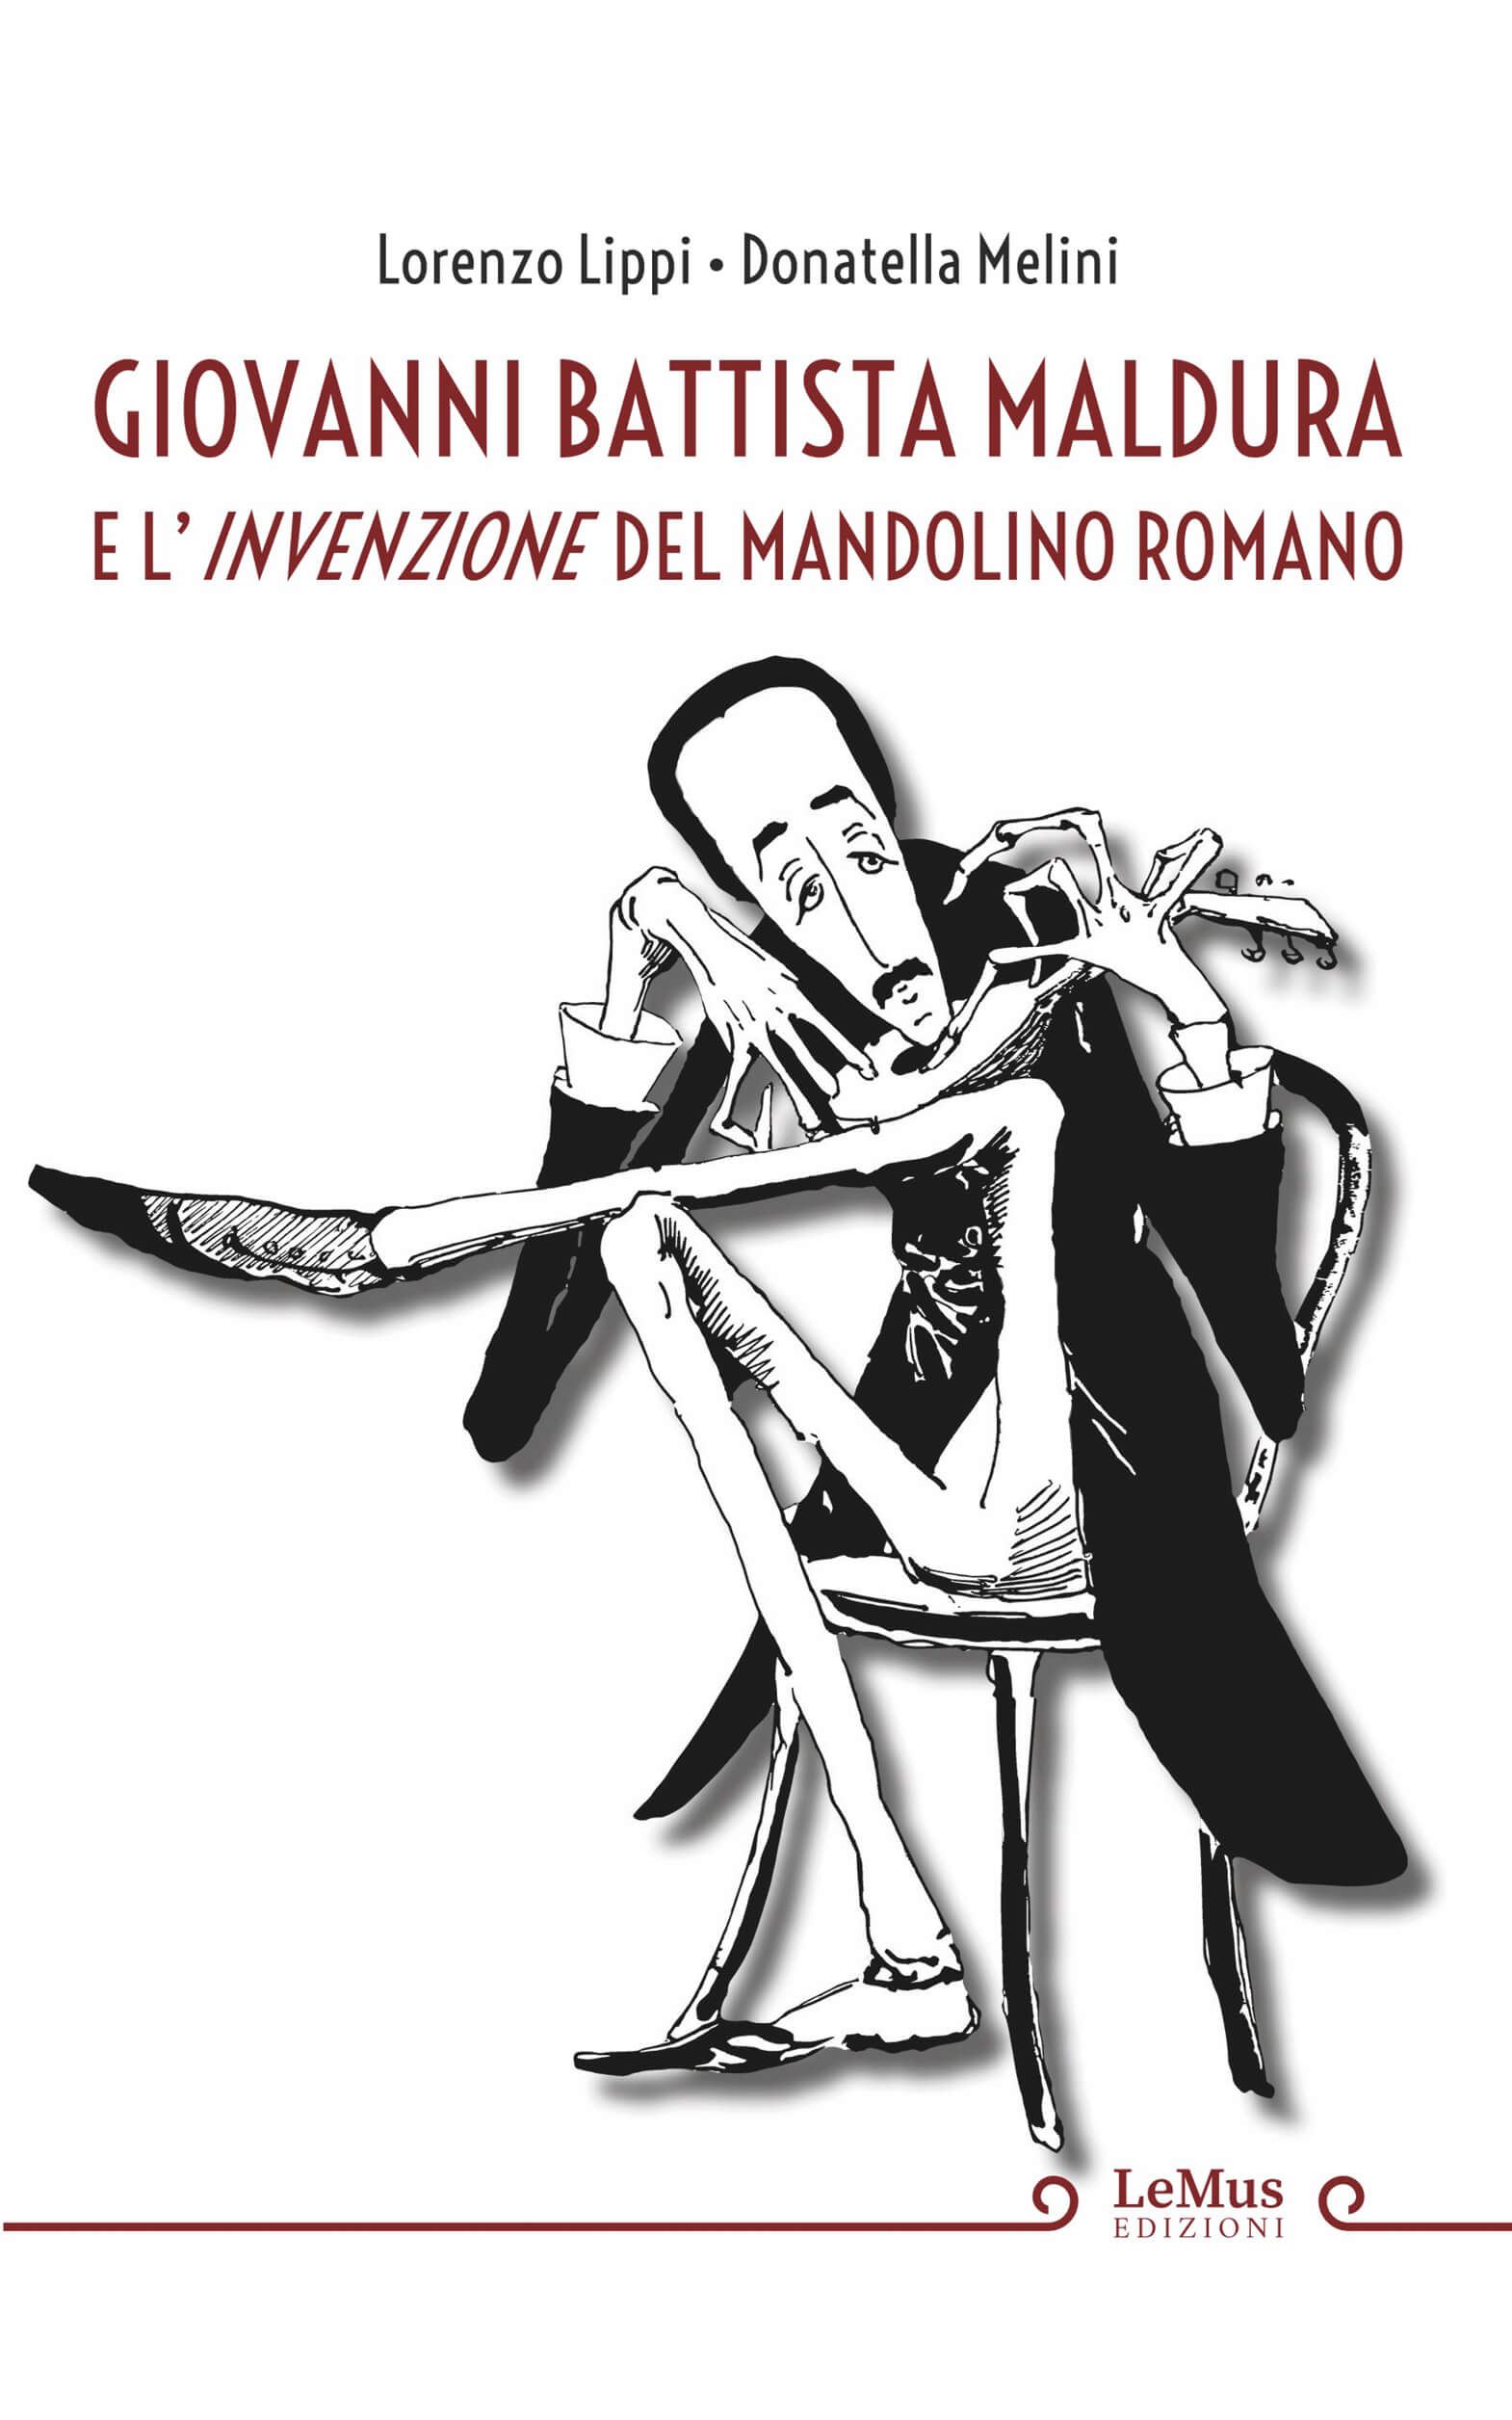 Maldura e l'invensione dle mandolino romano (Lippi-Melini)